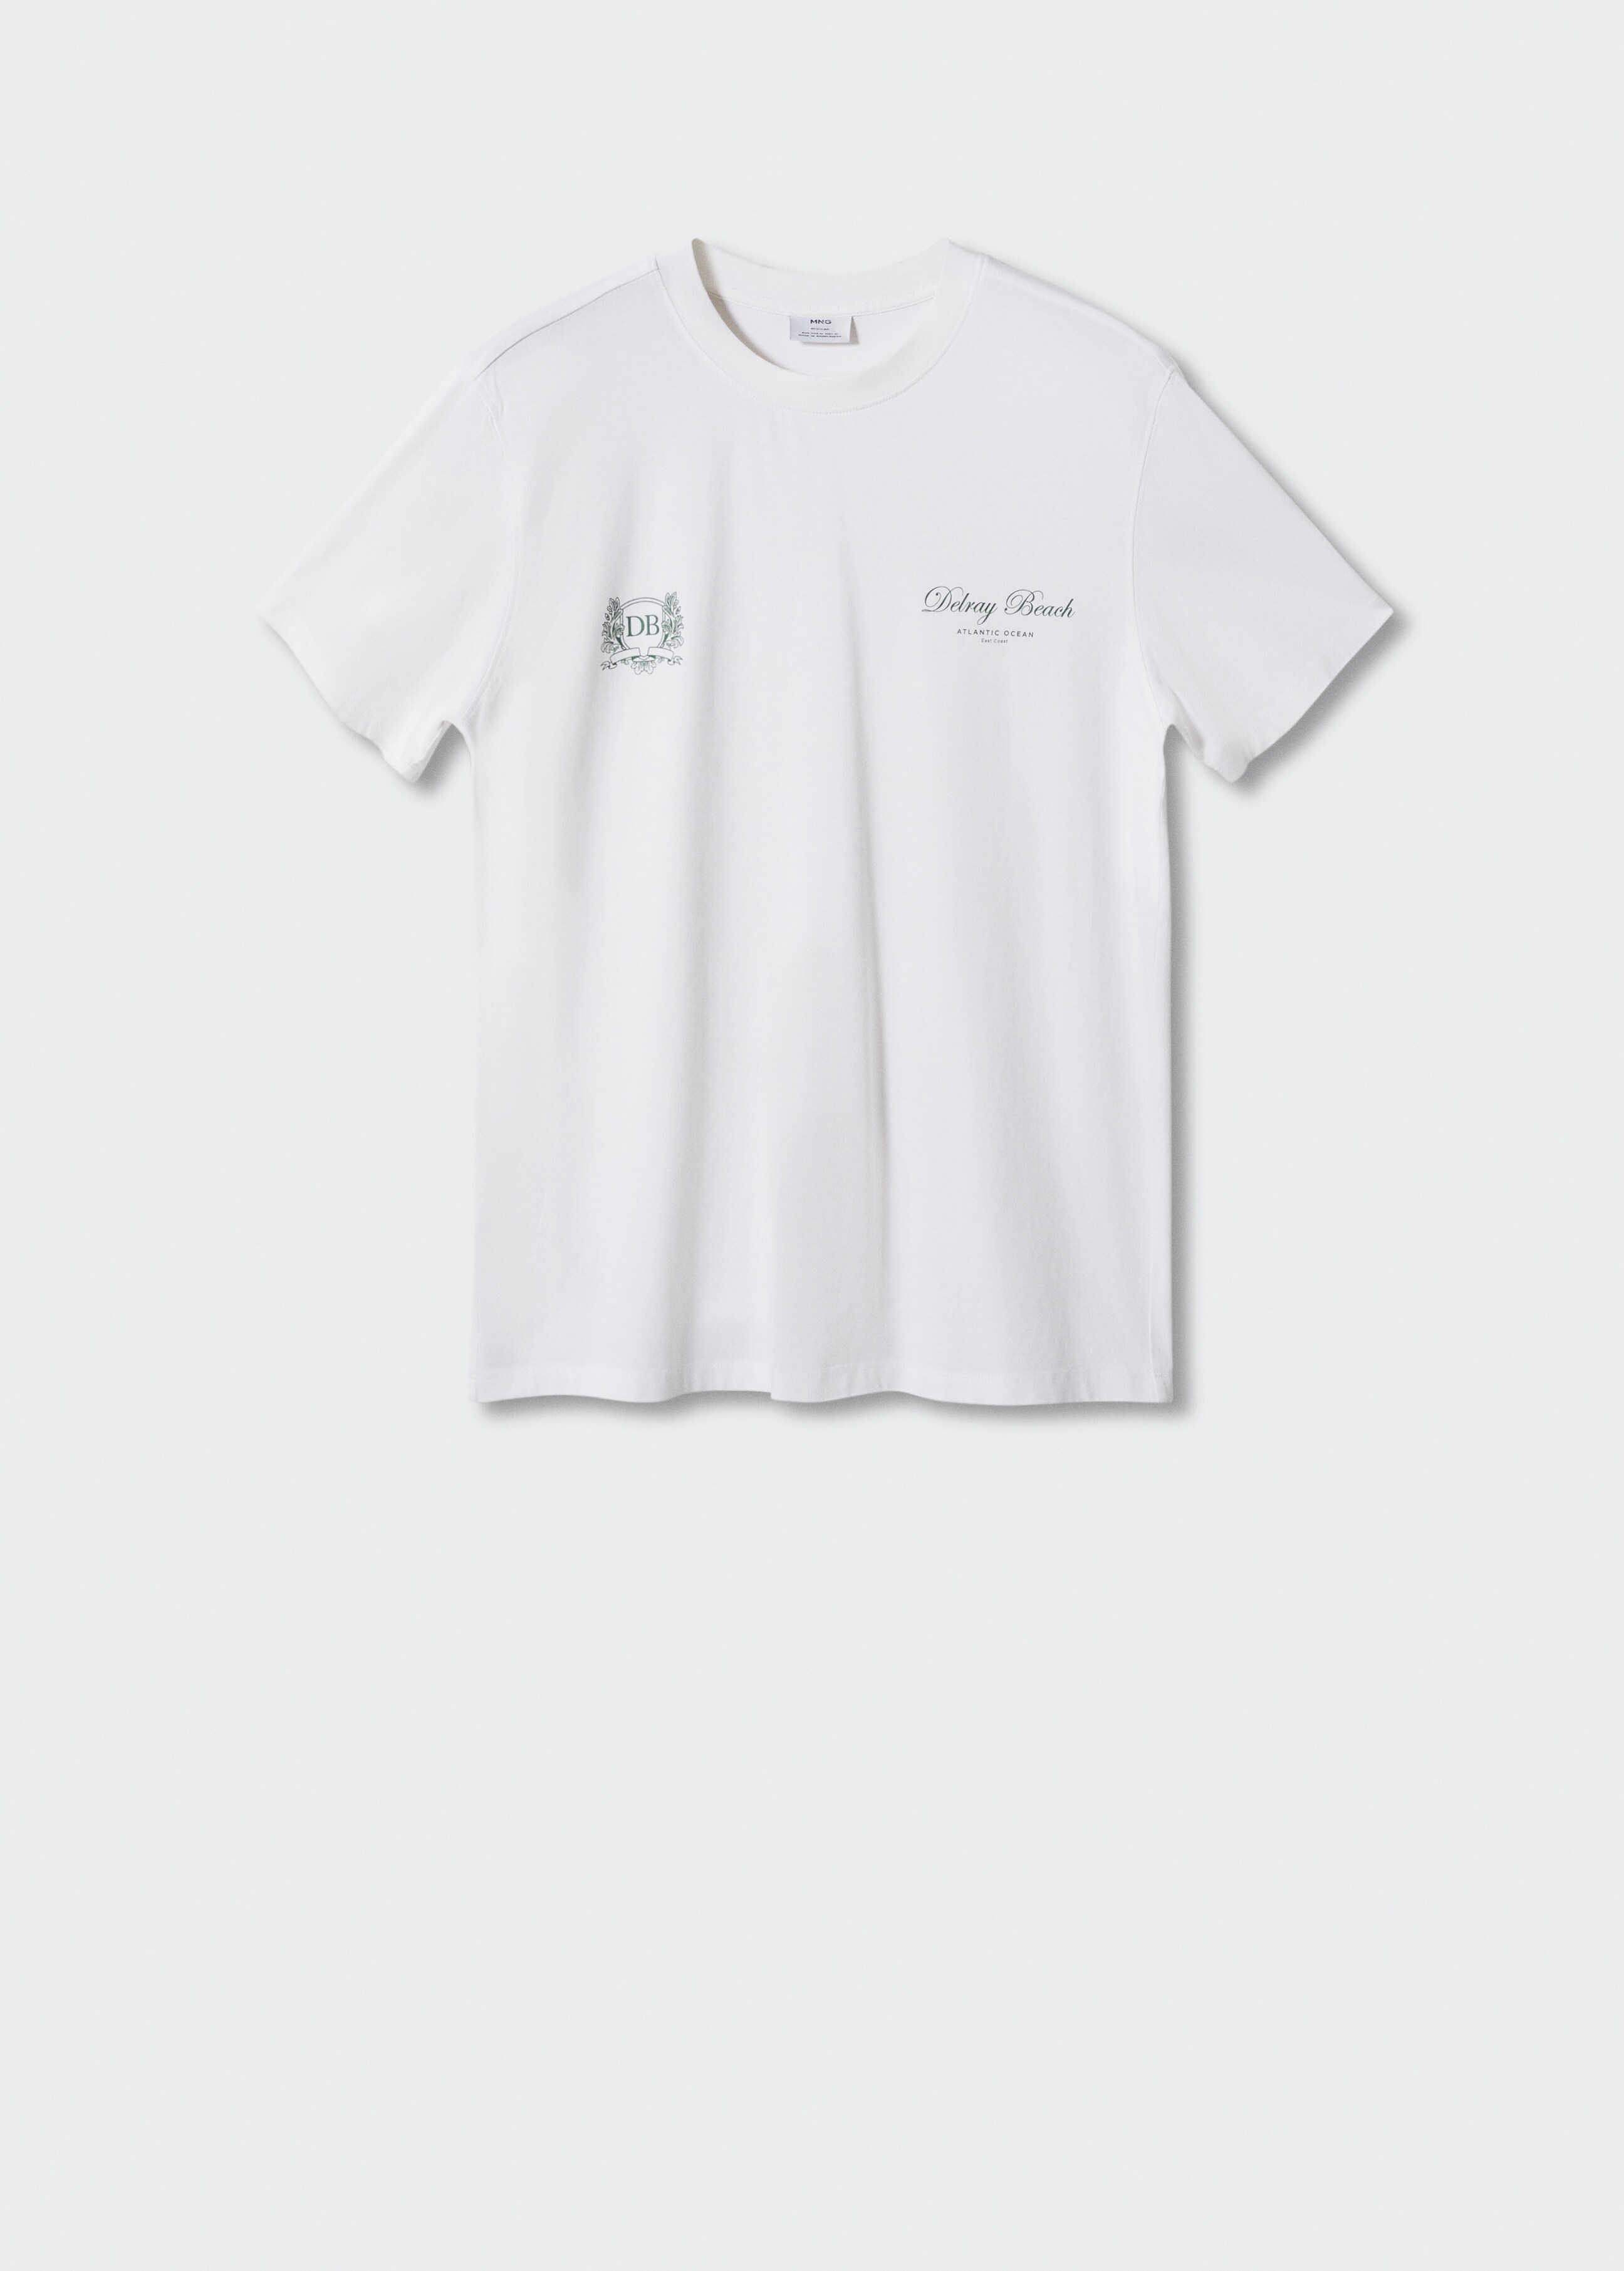 Camiseta 100% algodón texto - Artículo sin modelo